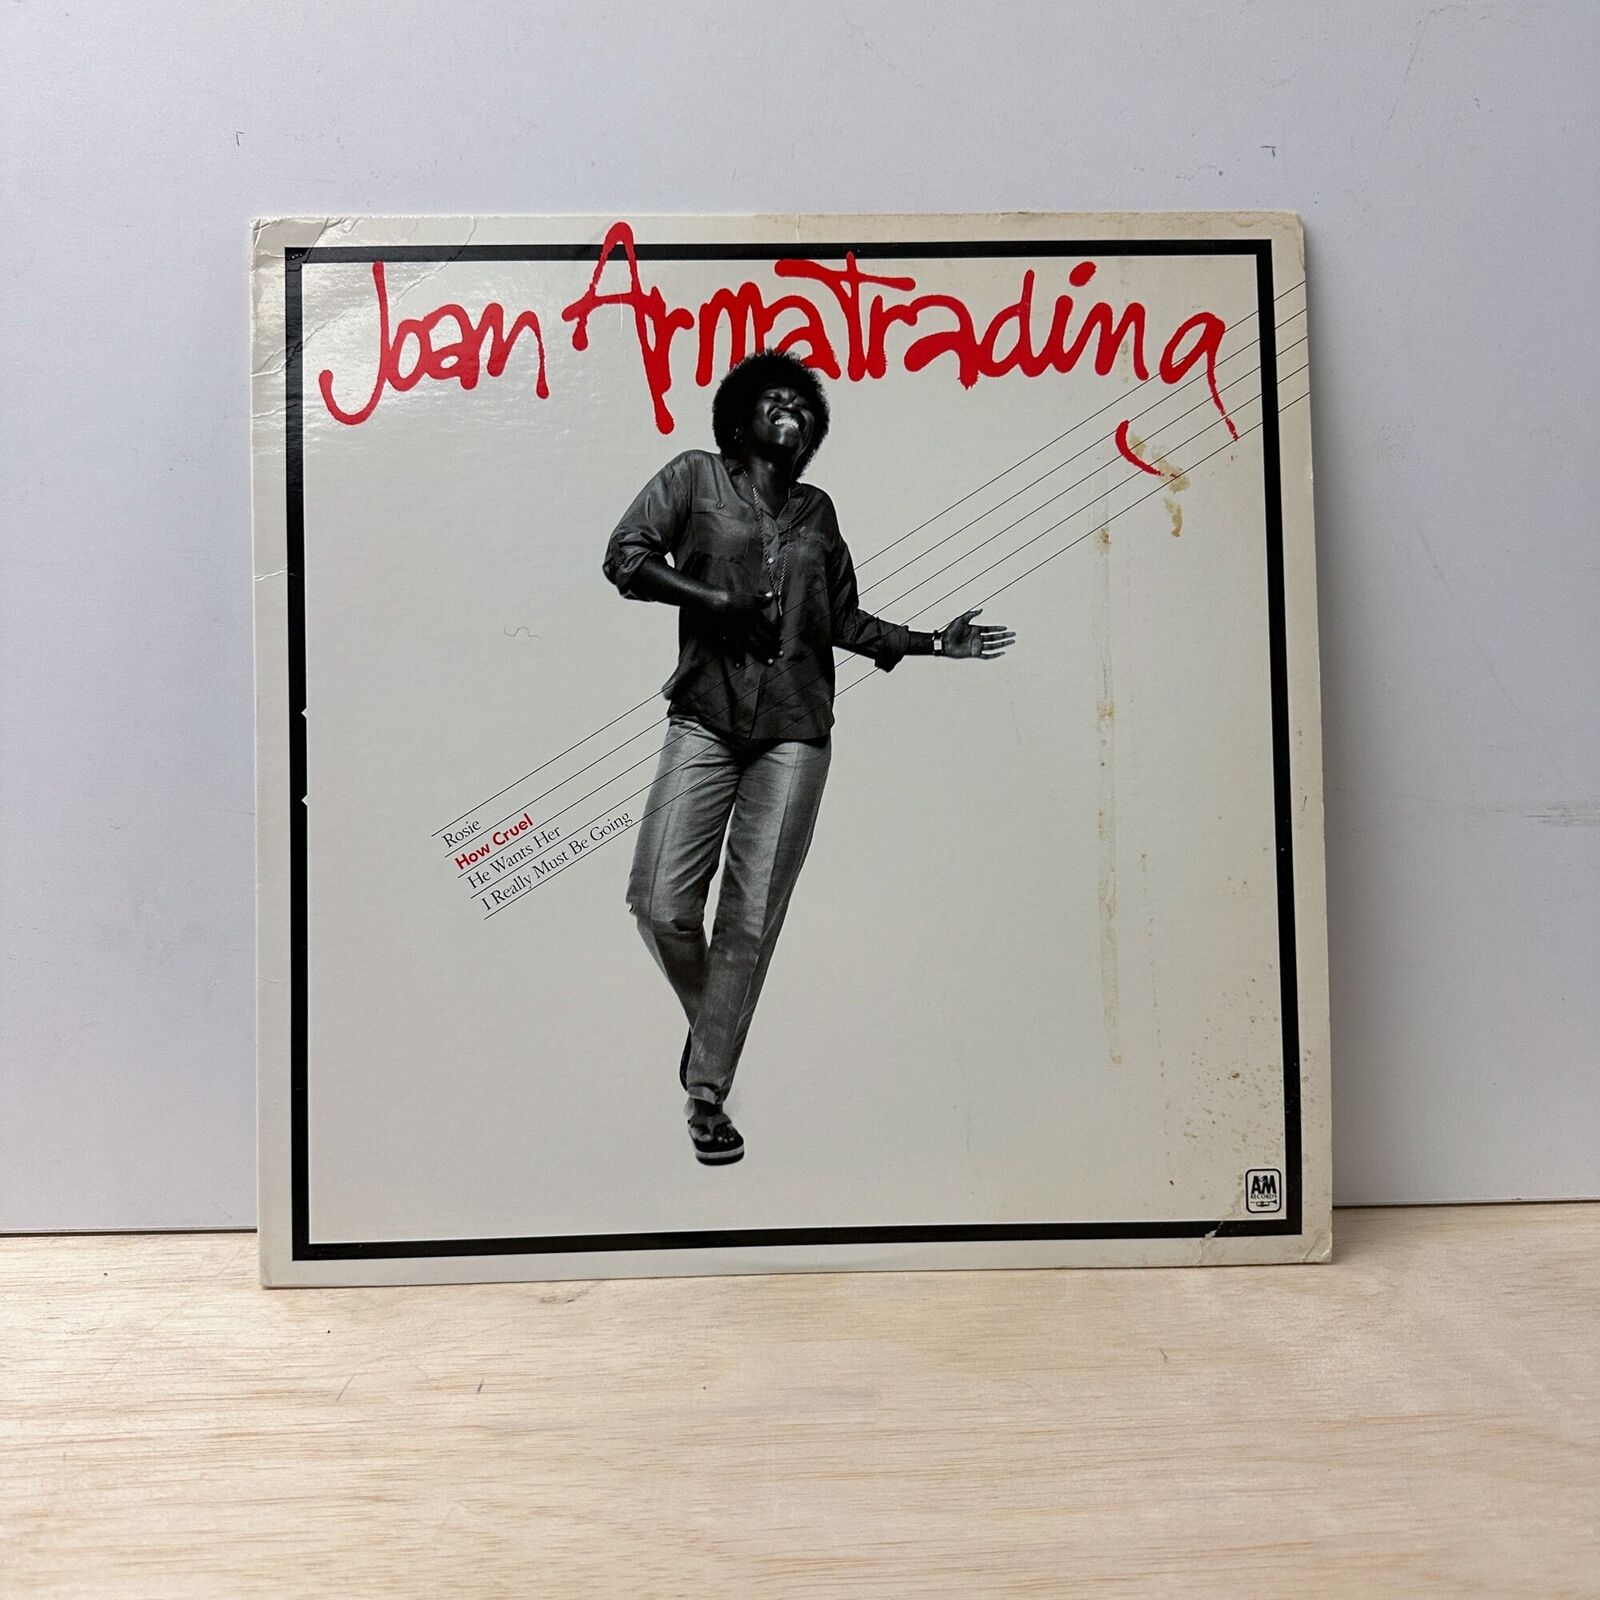 Joan Armatrading - How Cruel - Vinyl LP Record - 1979